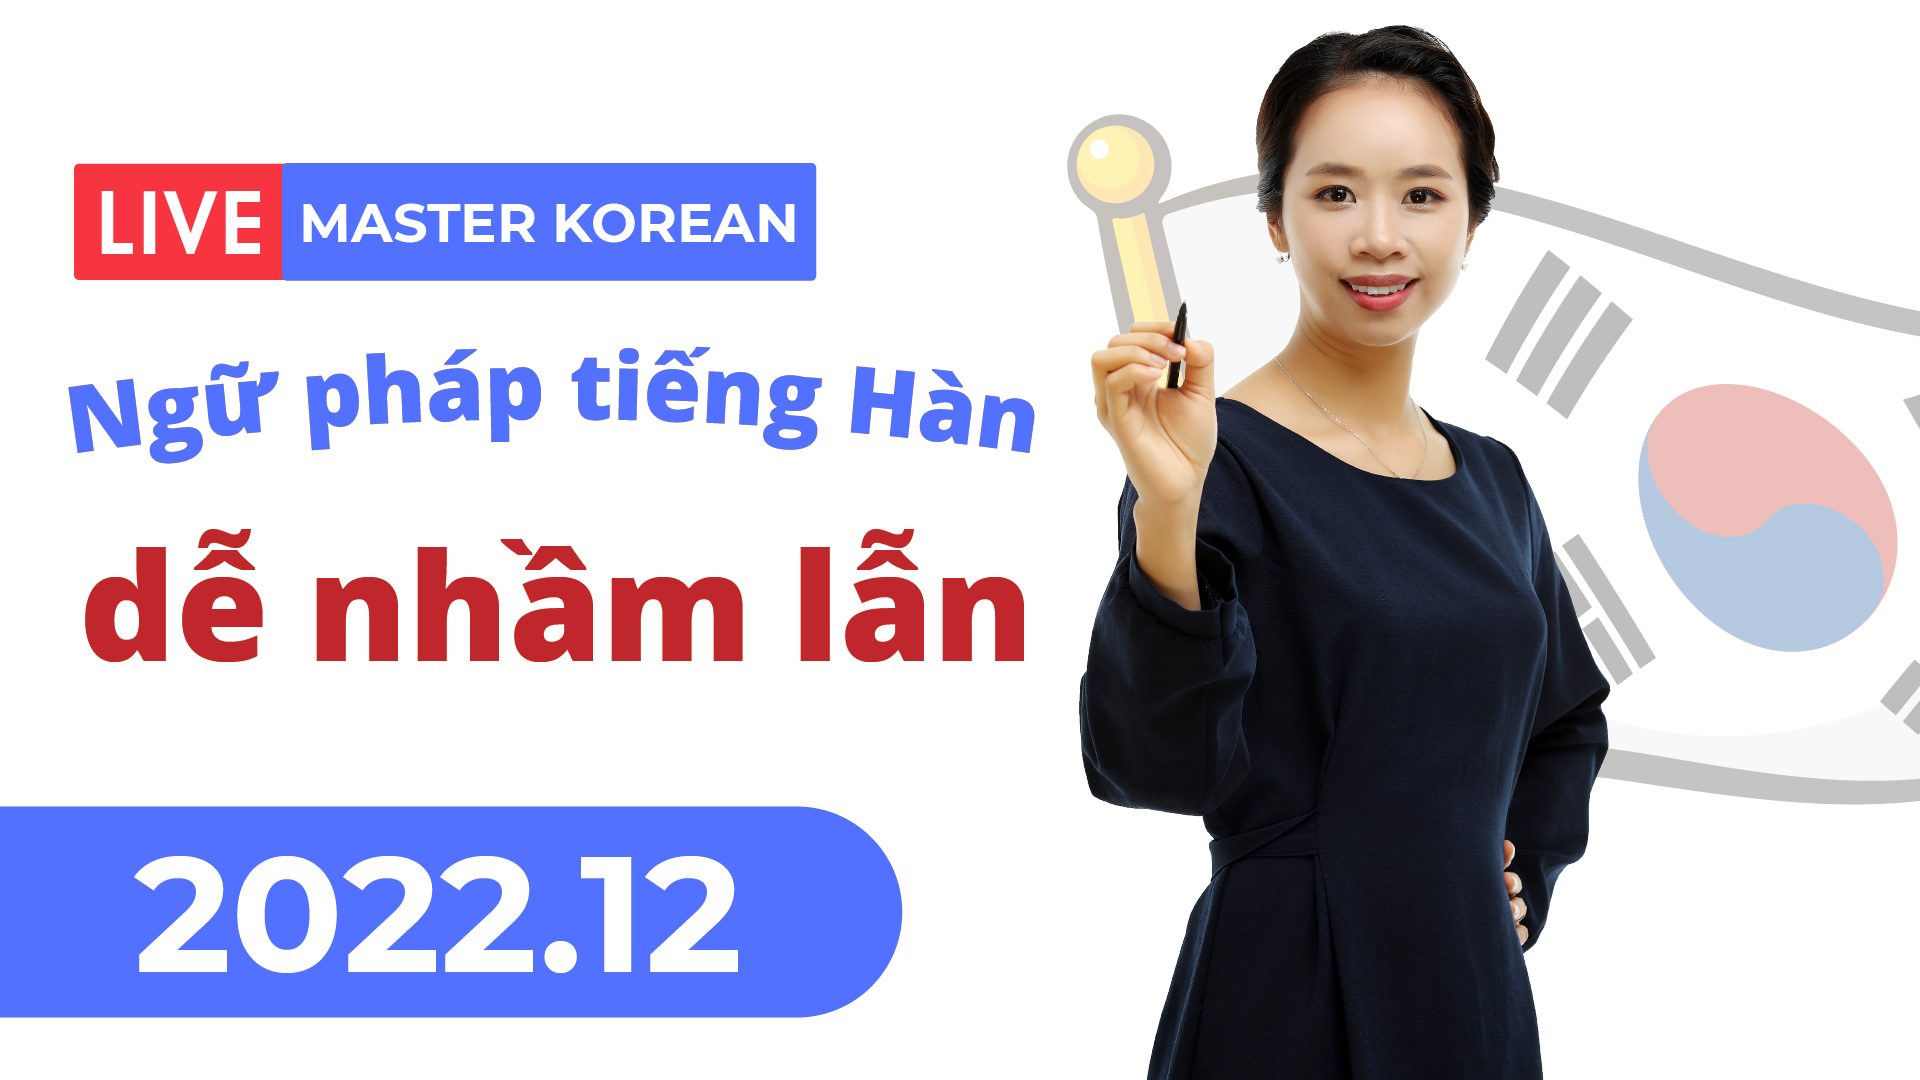 Facebook Livestream 2022.12 4 Ngữ pháp tiếng Hàn dễ nhầm lẫn